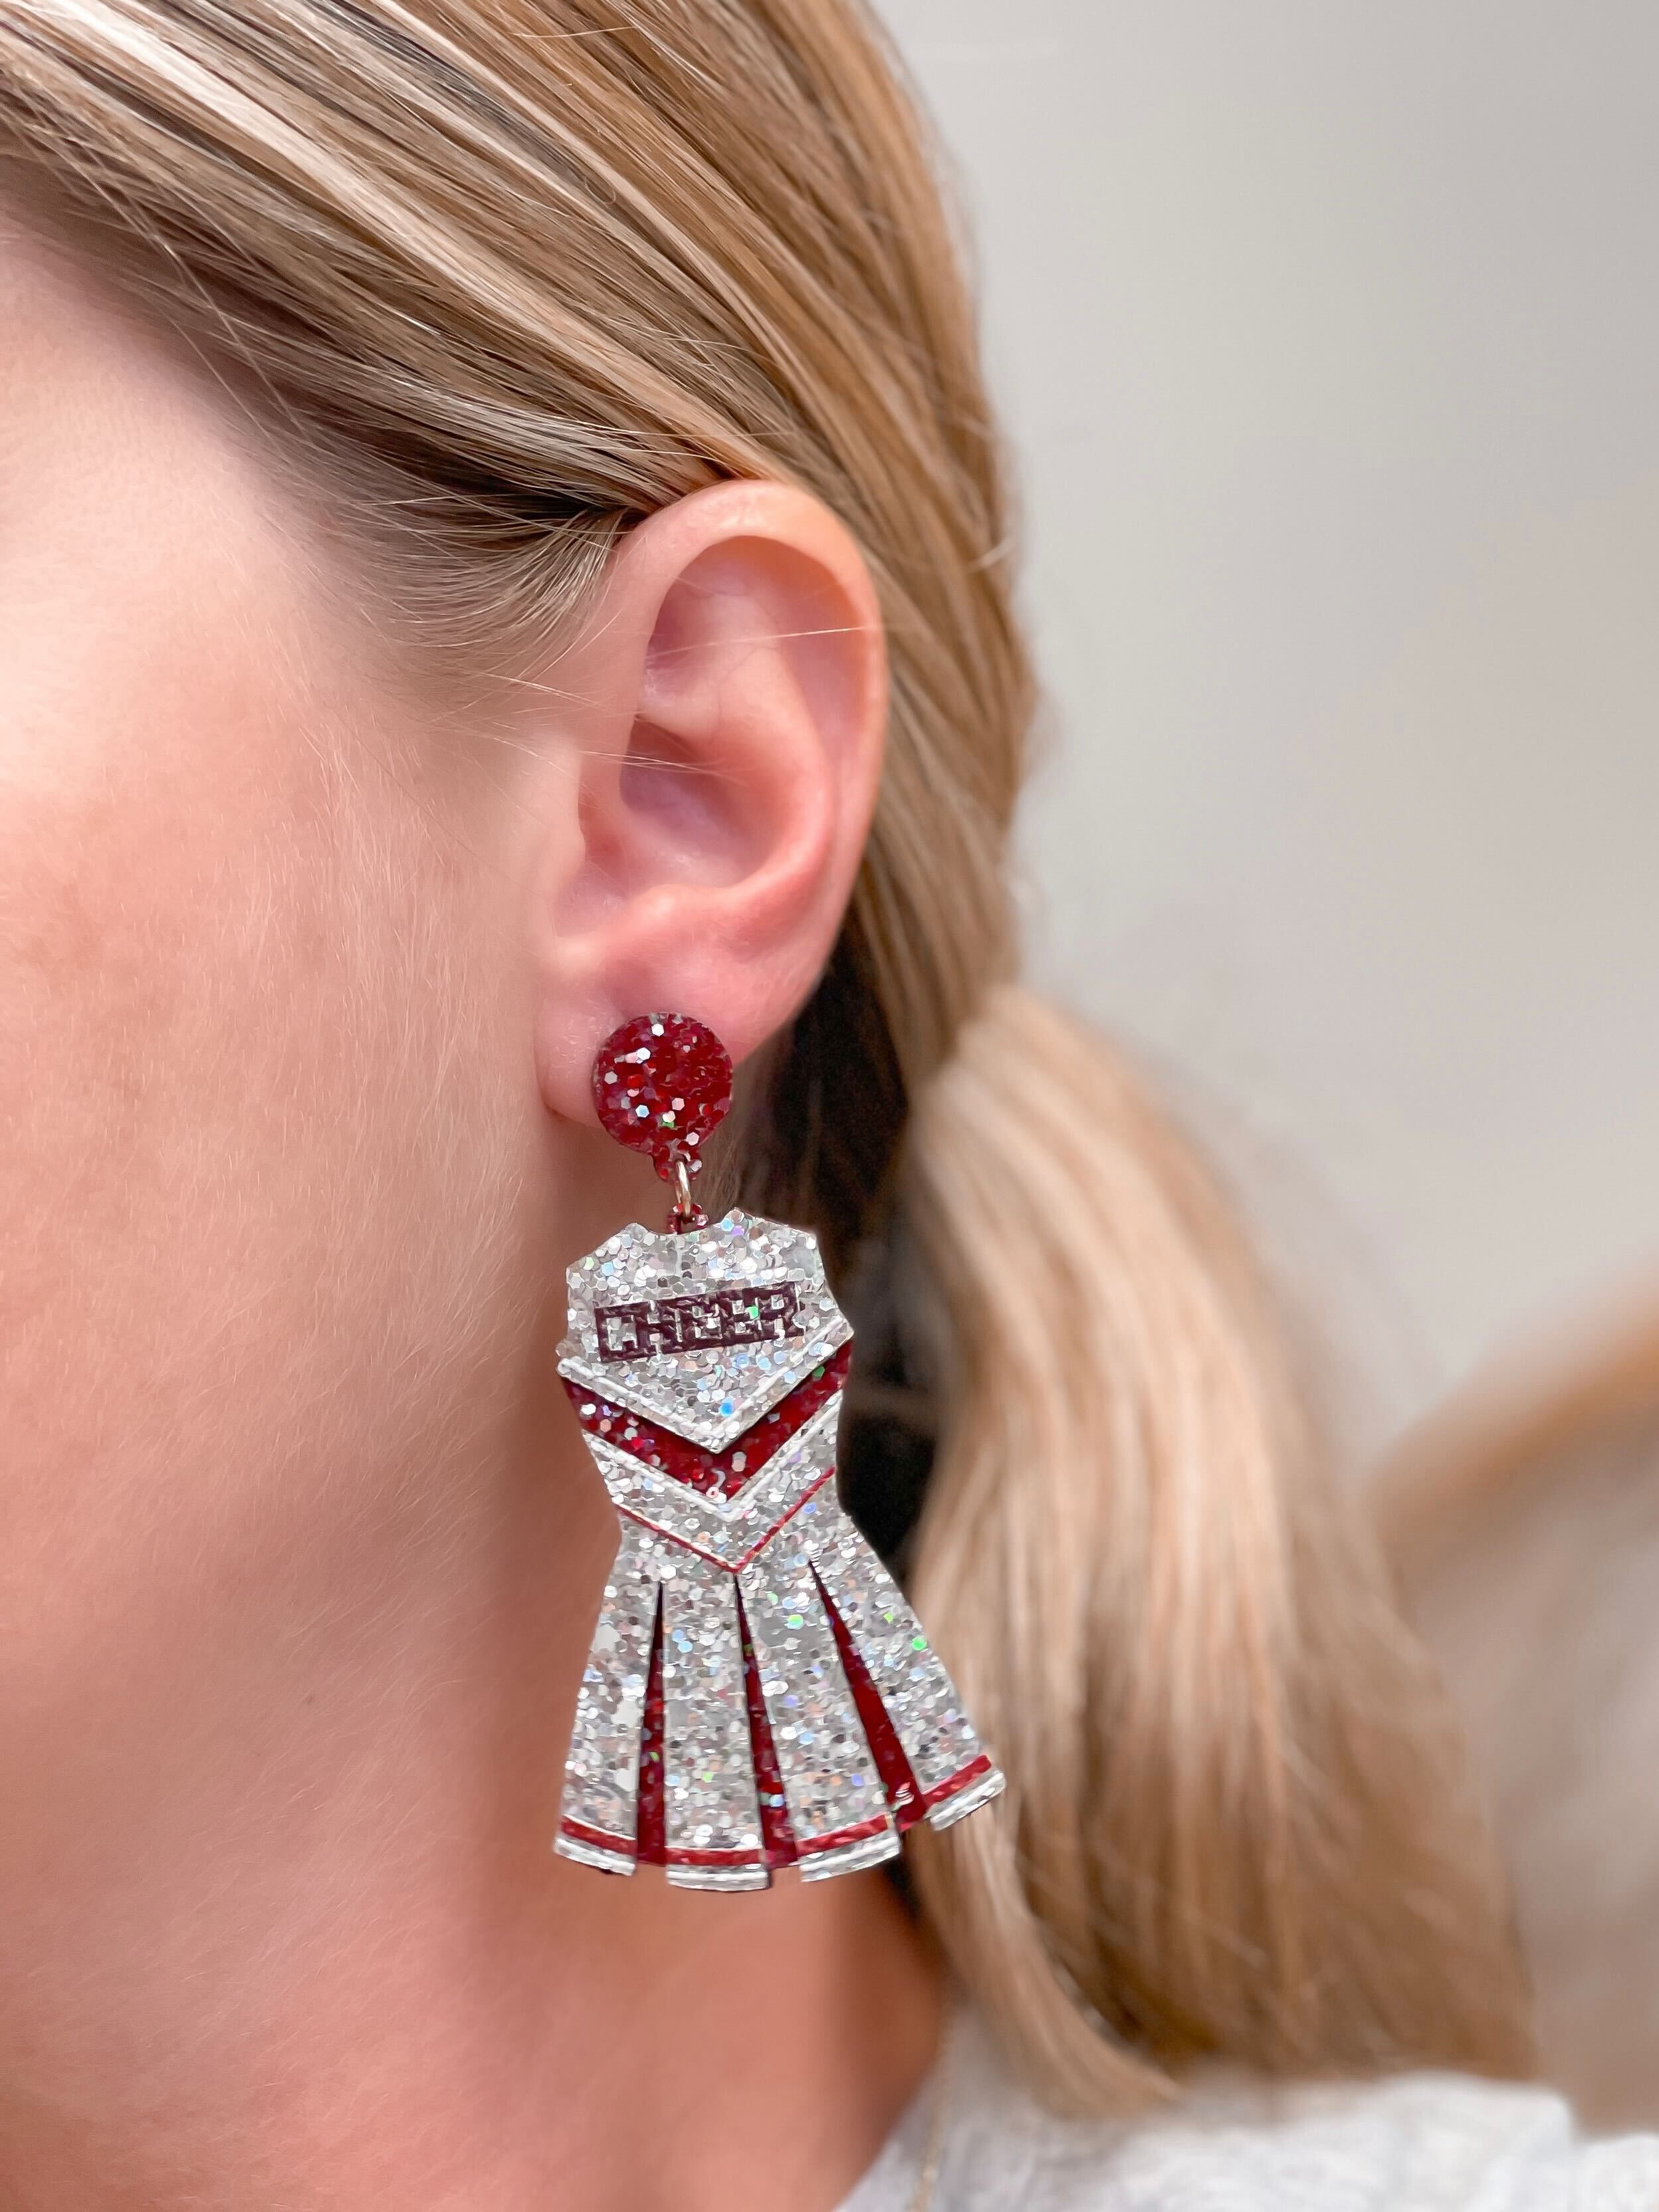 Glitter Cheerleader Dress Dangle Earrings - Silver & Burgundy